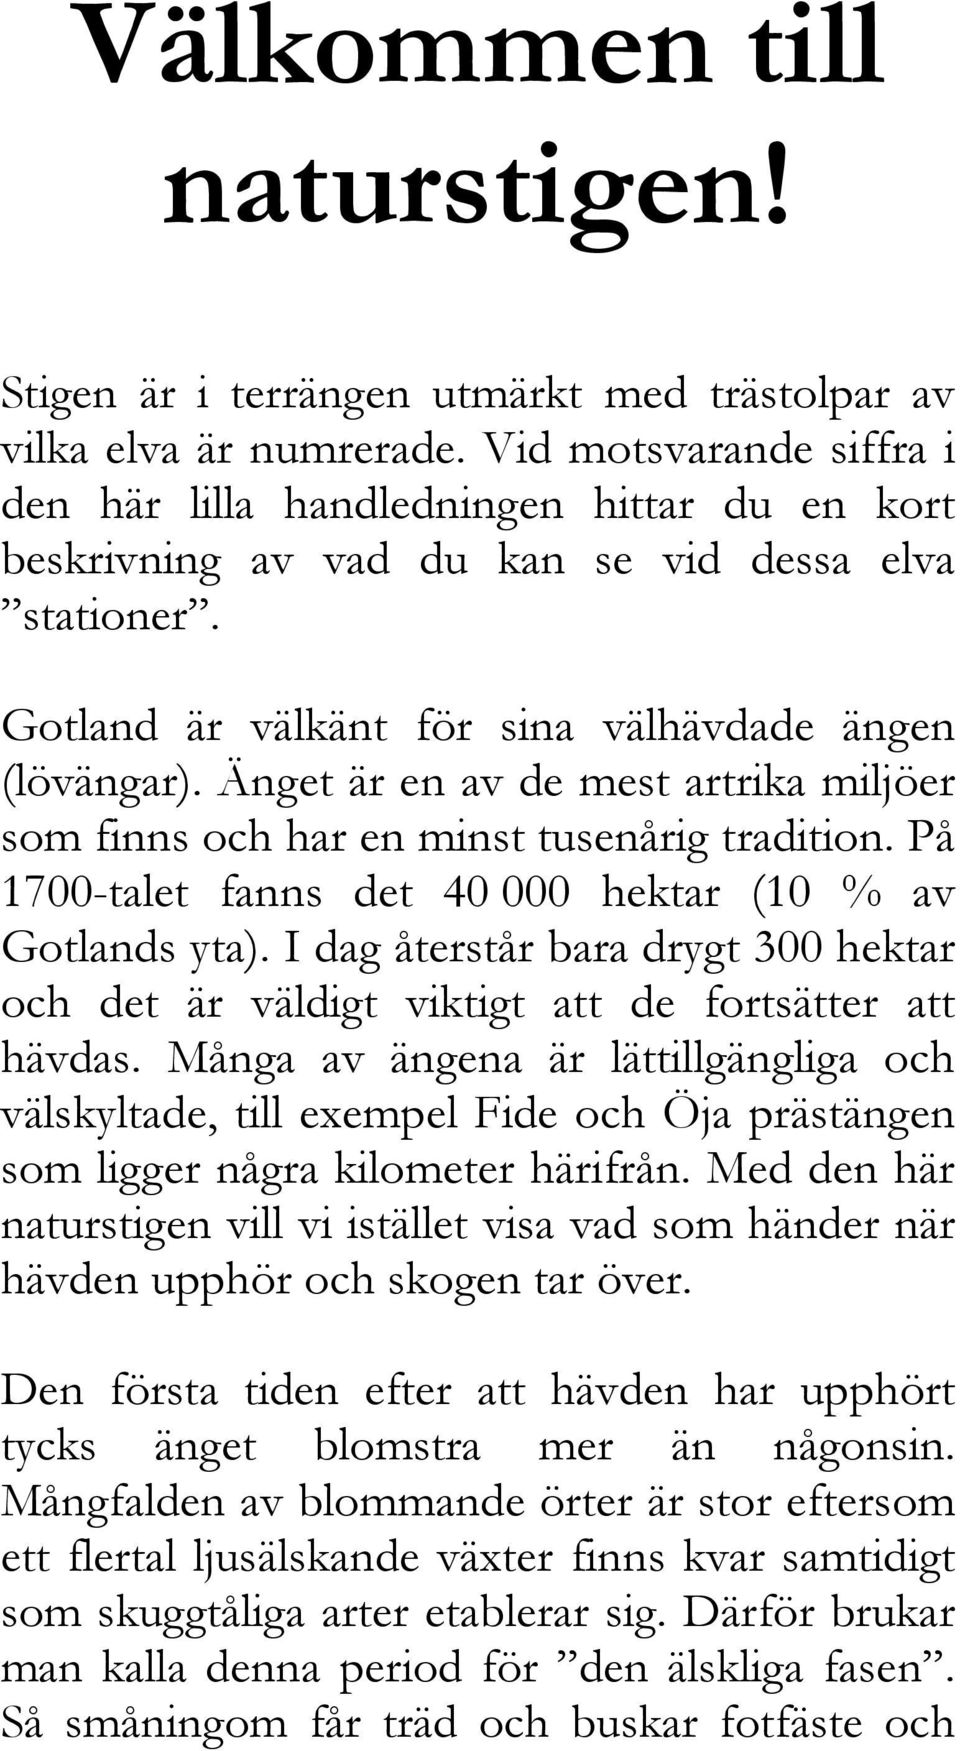 Änget är en av de mest artrika miljöer som finns och har en minst tusenårig tradition. På 1700-talet fanns det 40 000 hektar (10 % av Gotlands yta).